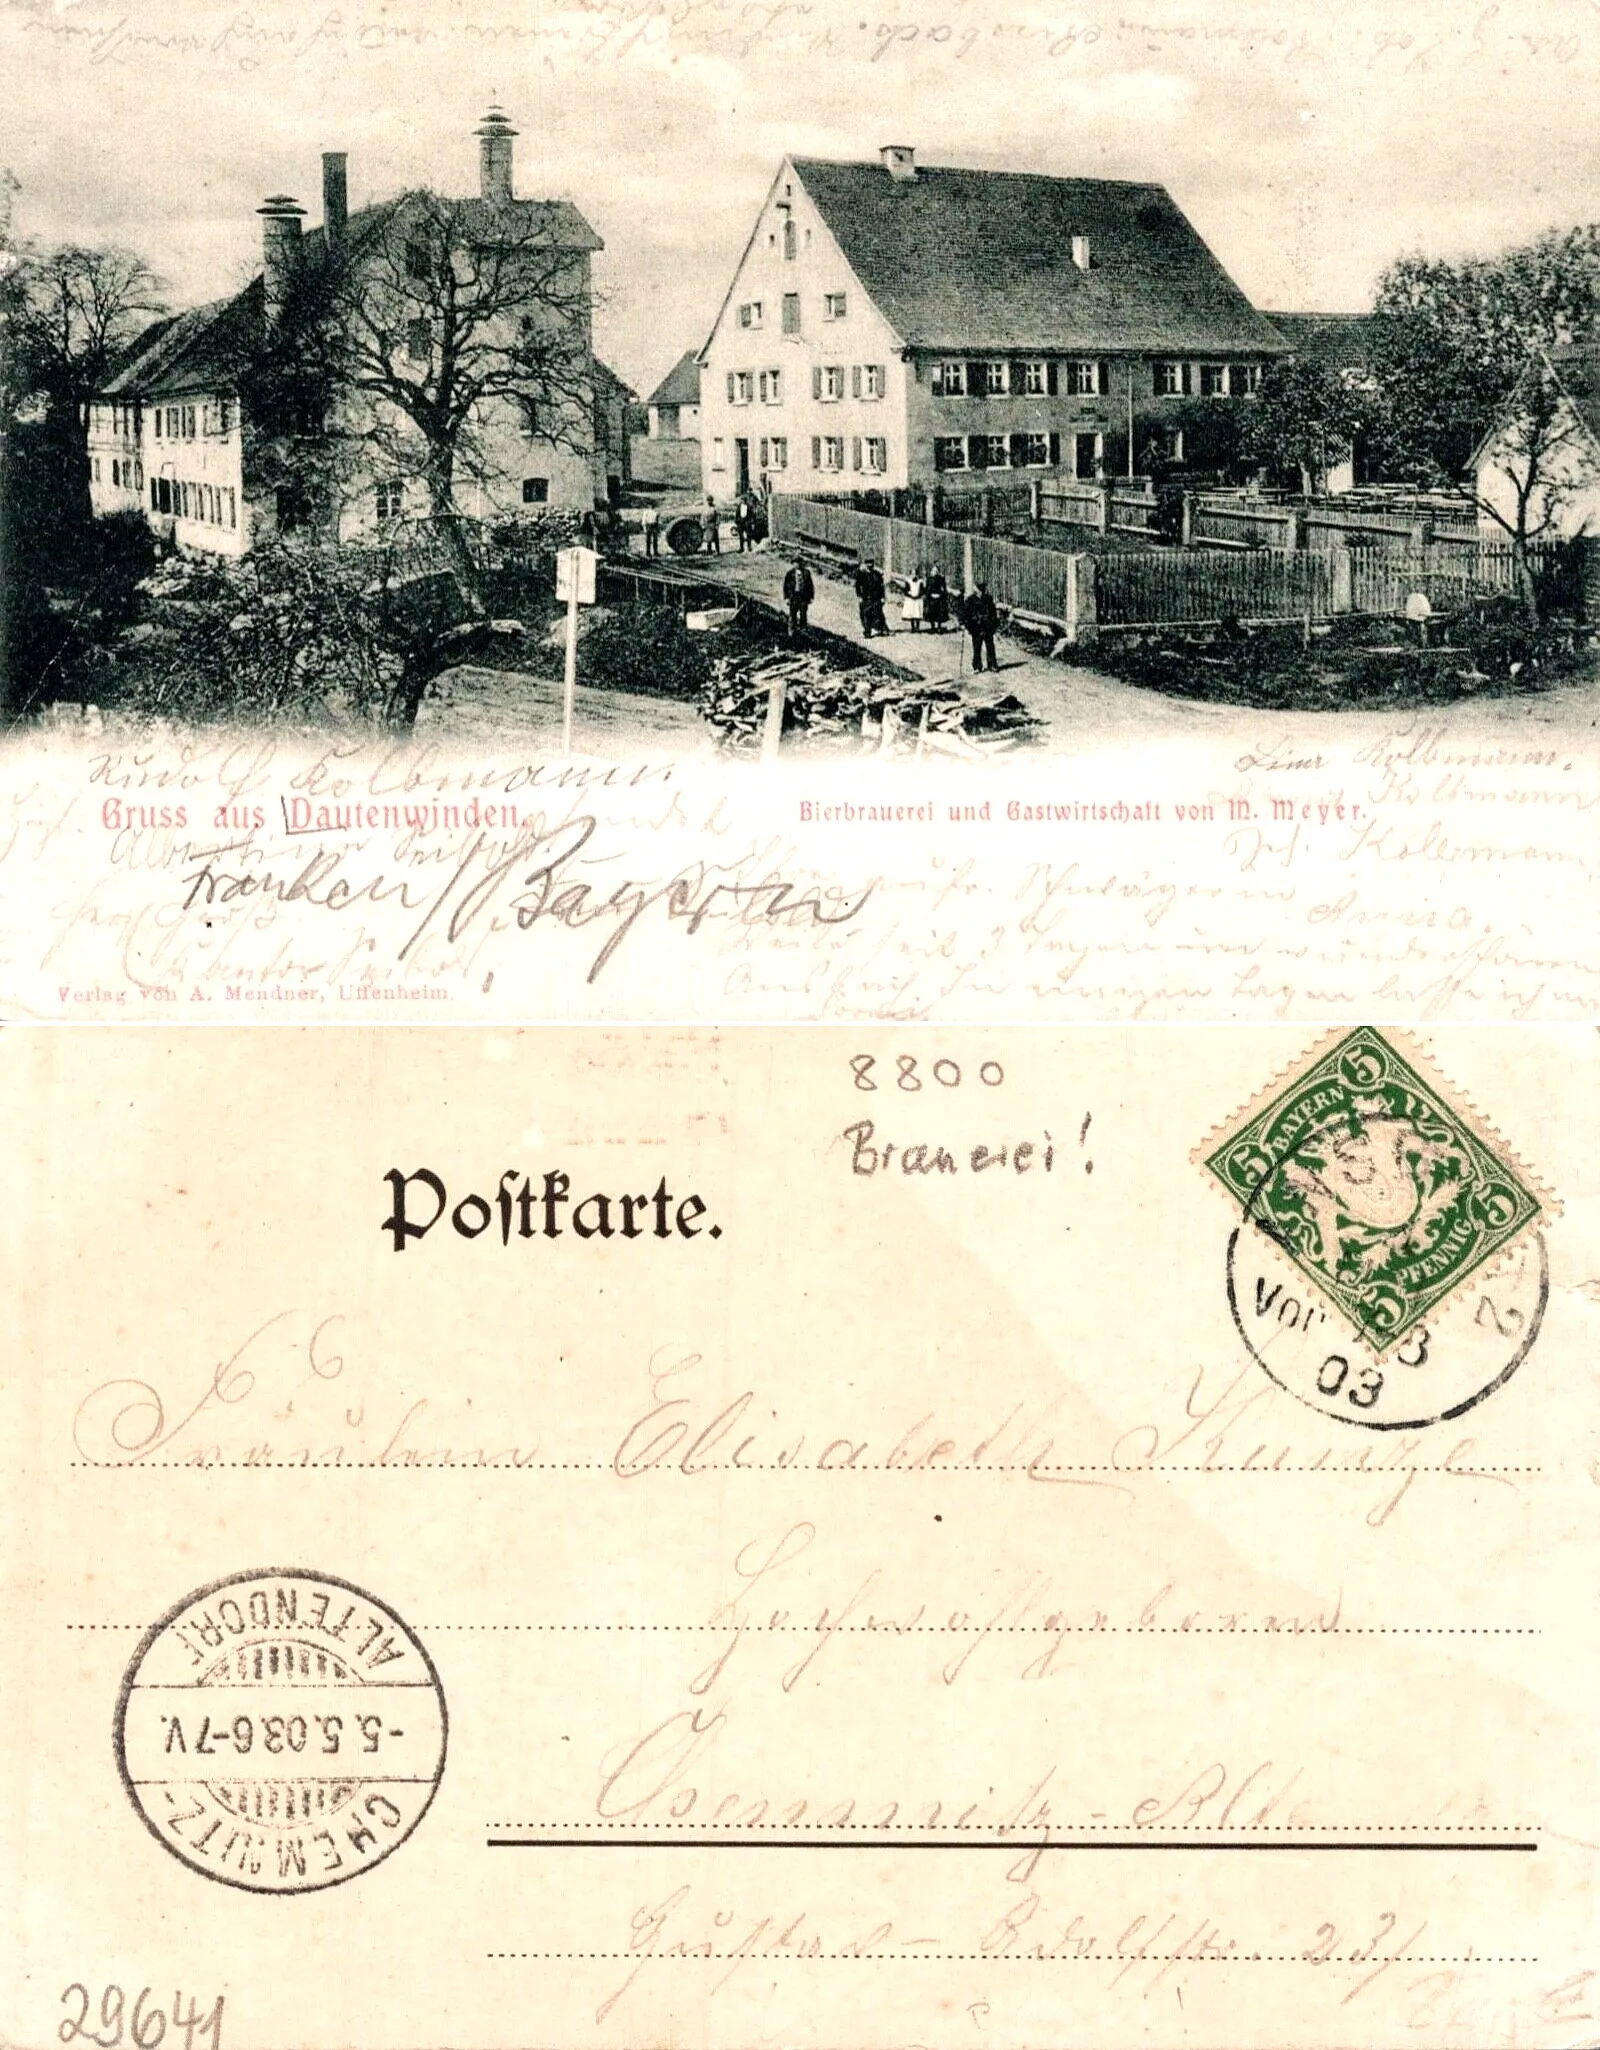 Photo showing: AK - Dautenwinden - Brauereigasthof Meyer -1903